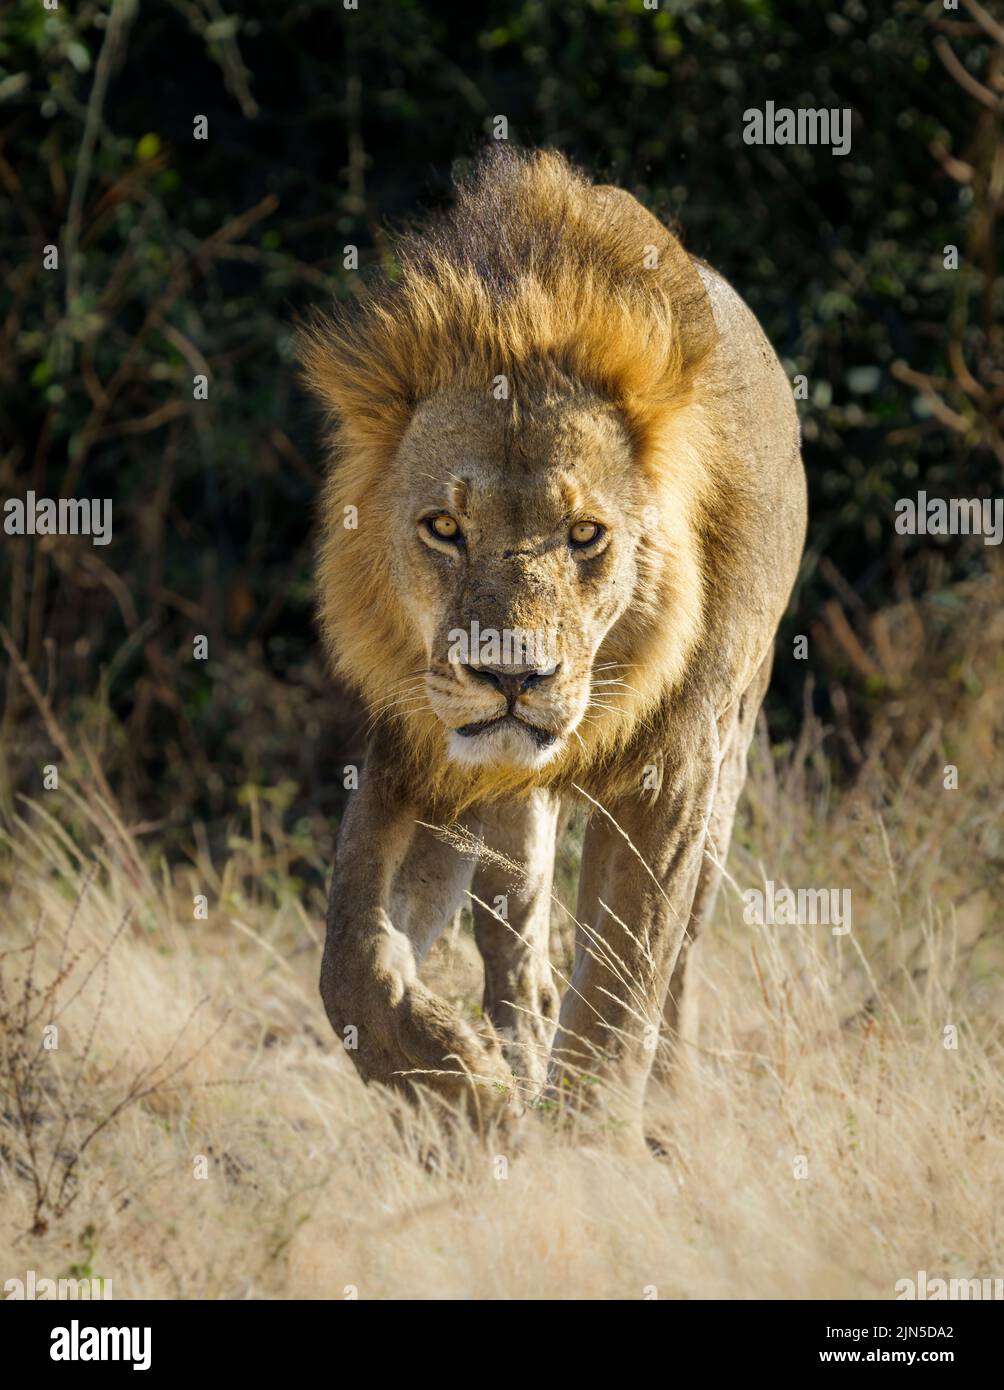 Le portrait de Lion (Panthera leo) se dirige vers l'appareil photo. Arrière-plan flou. Parc national de Chobe, Botswana, Afrique Banque D'Images